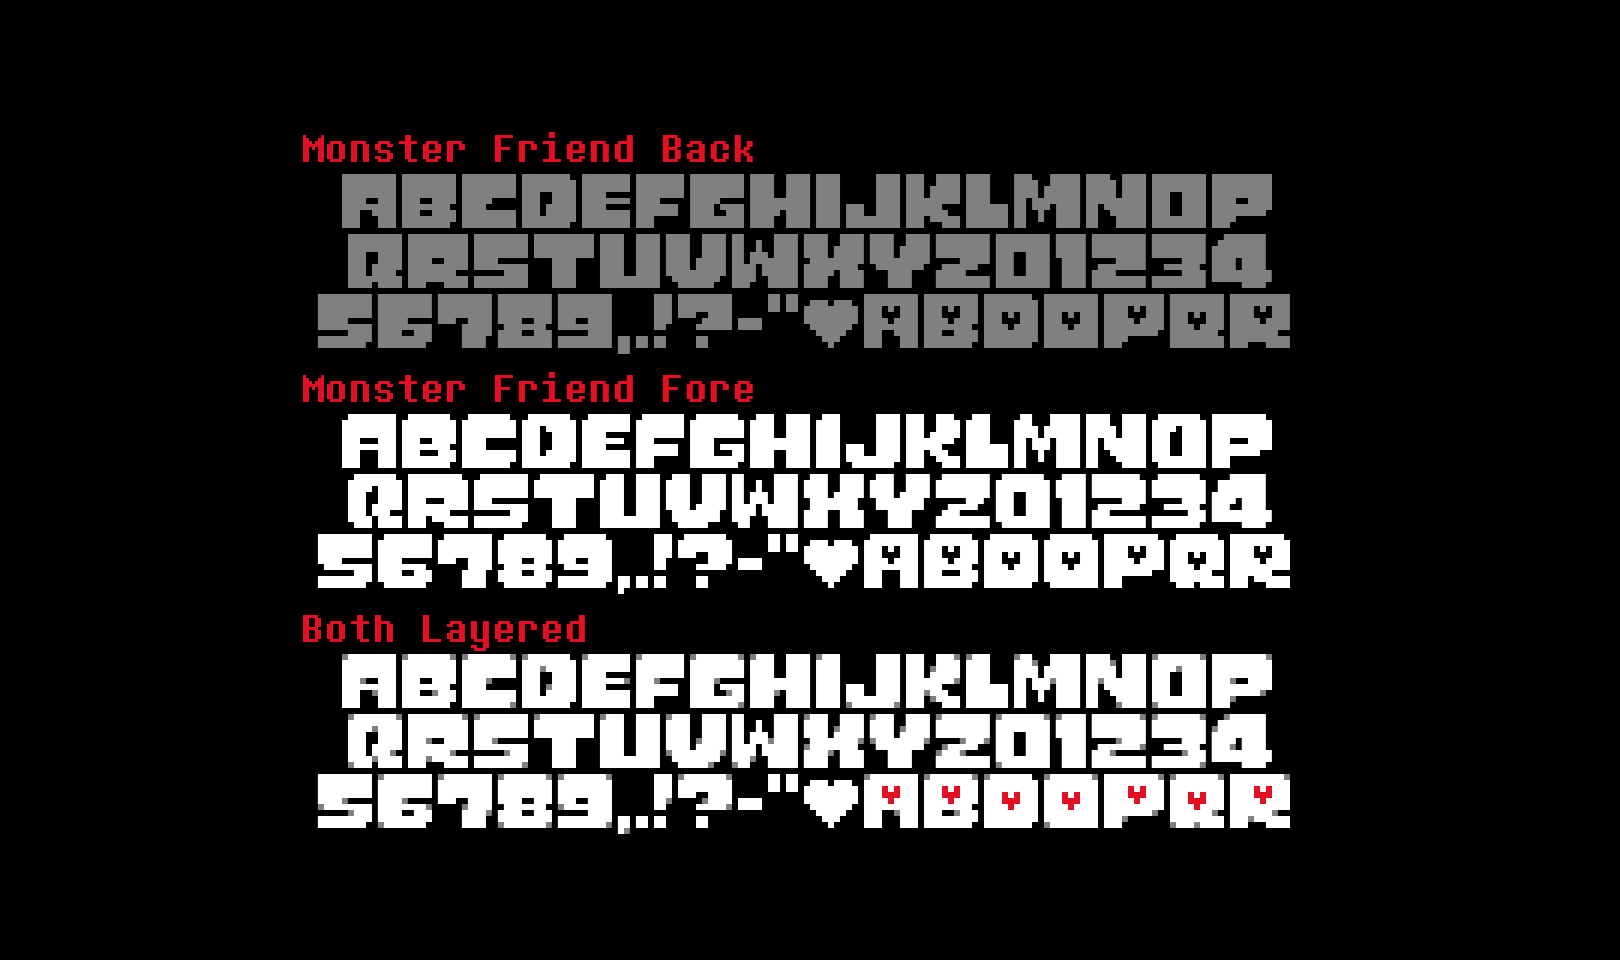 Undertale Logo - Monster Friend: Undertale Logo Font on Behance